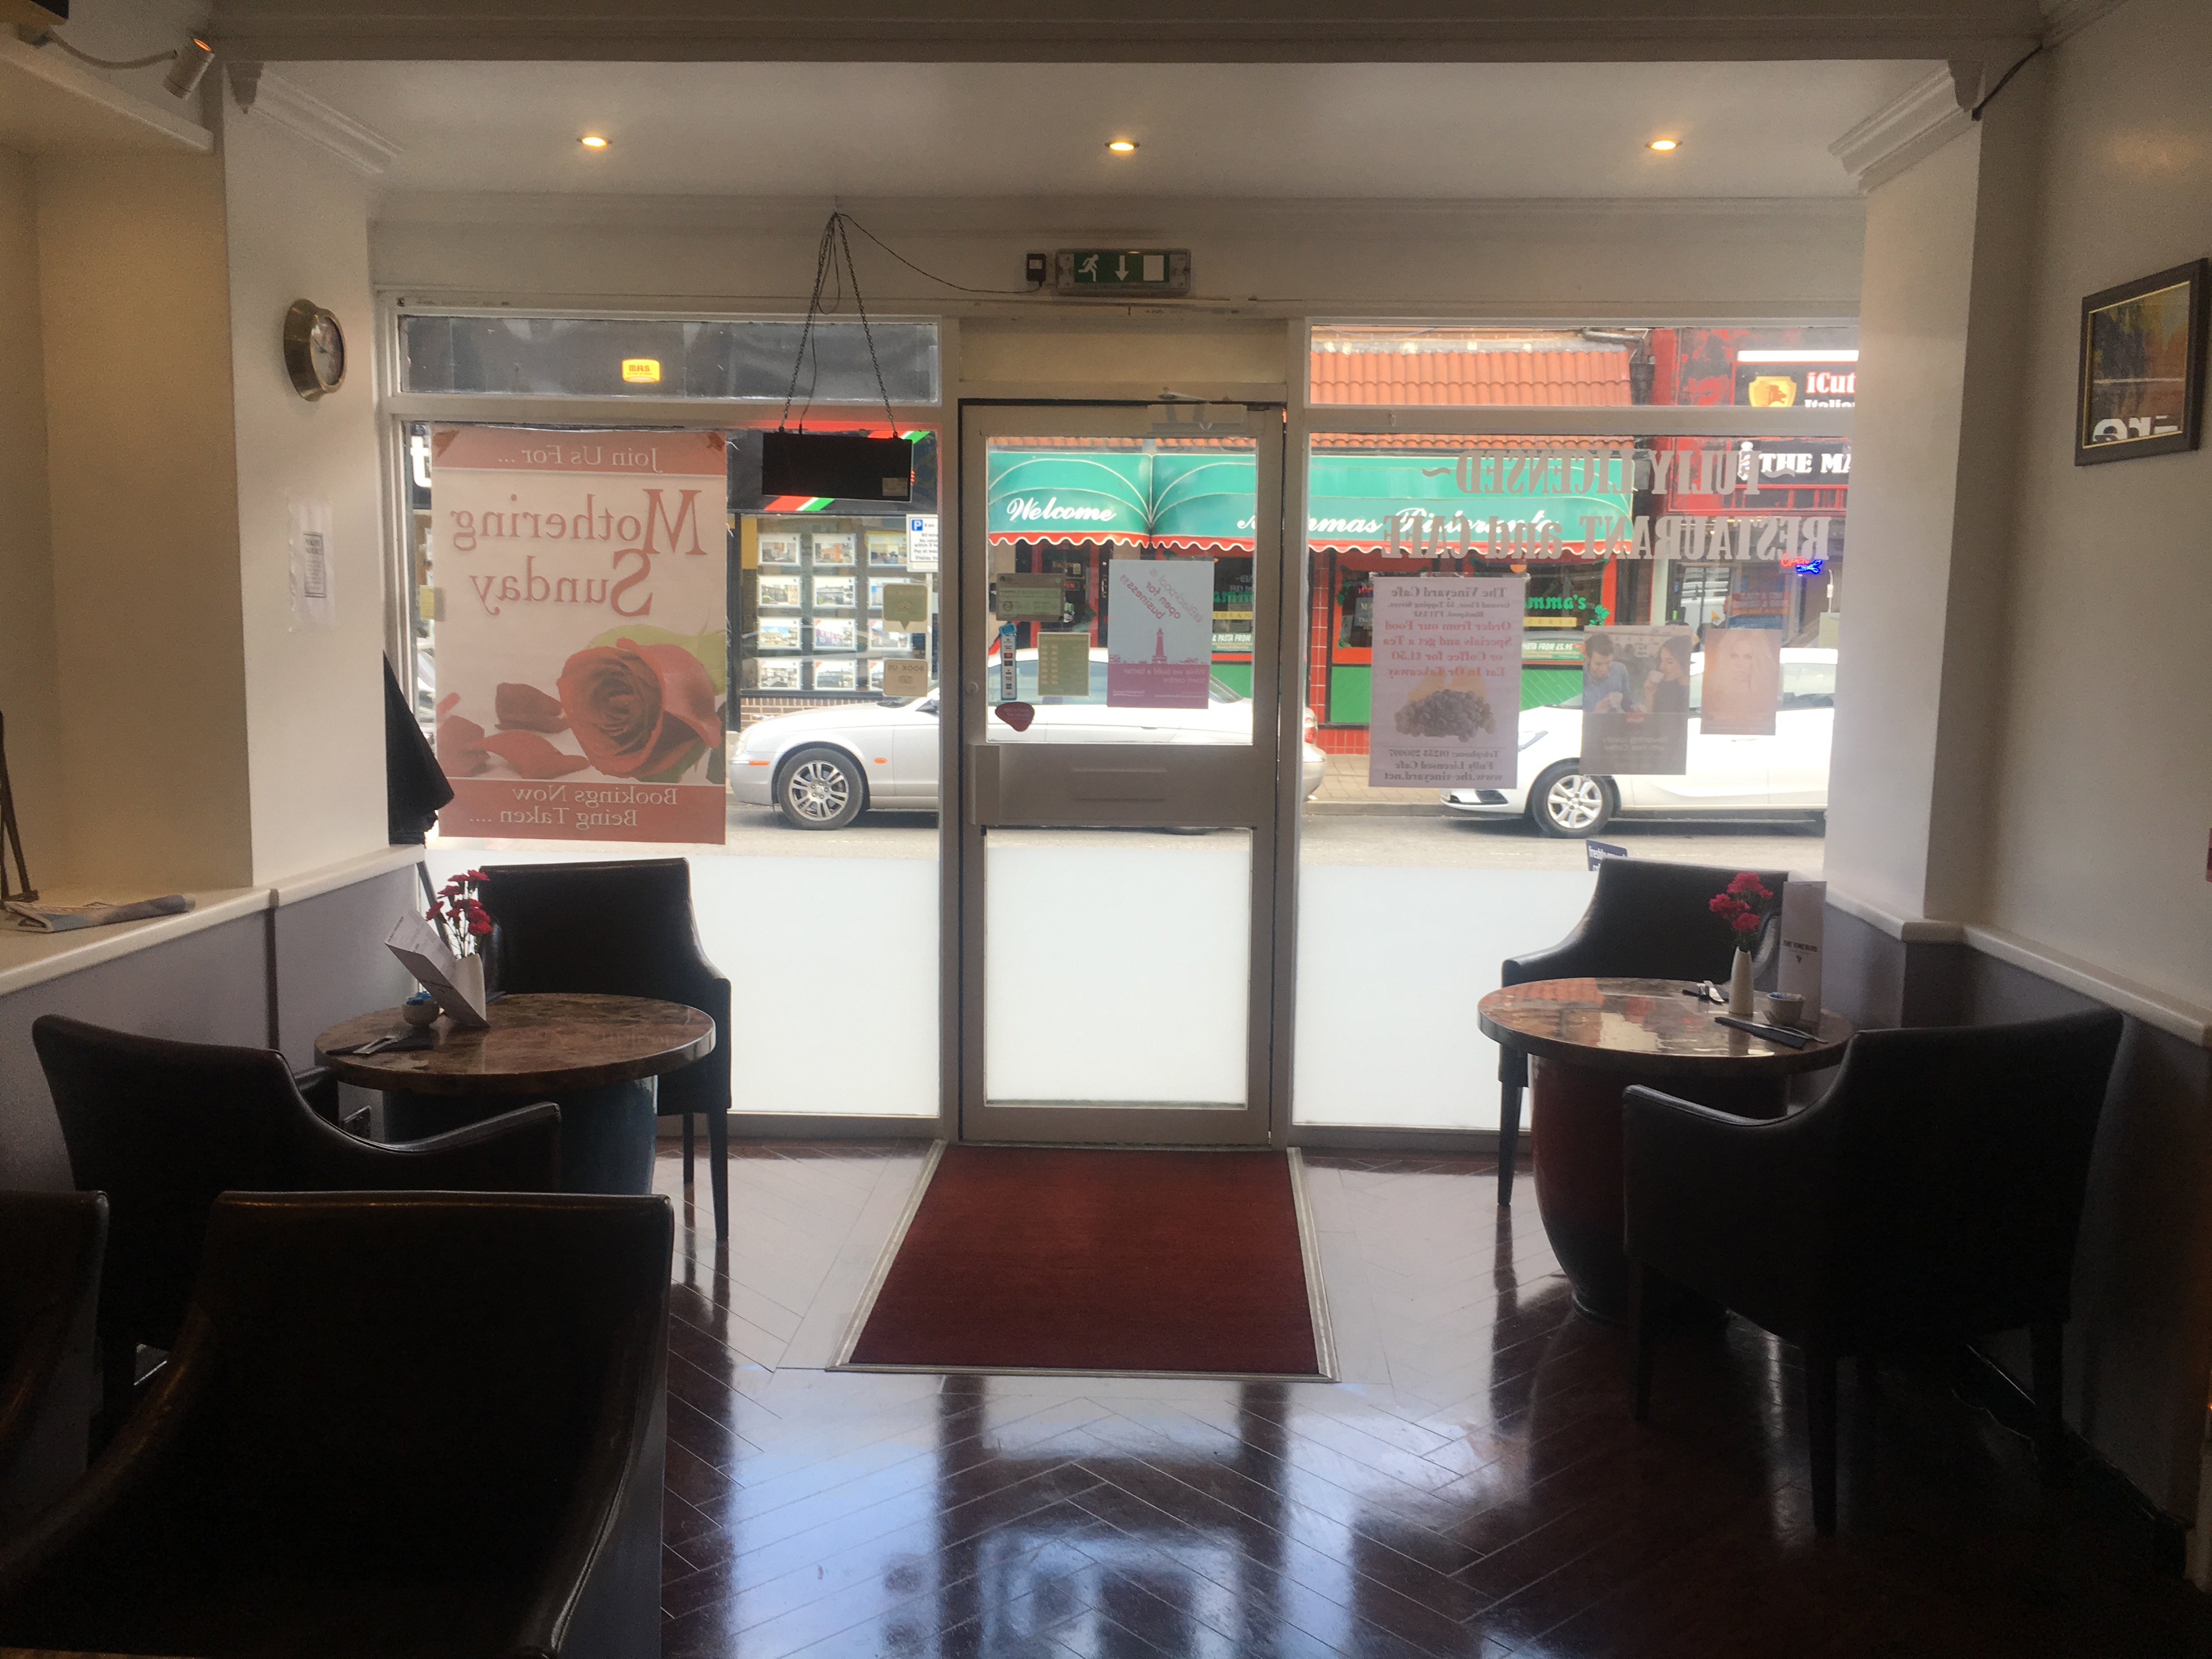 The Vineyard Café & Bistro Blackpool | 55 Topping Street, Blackpool FY1 3AF | +44 1253 921464